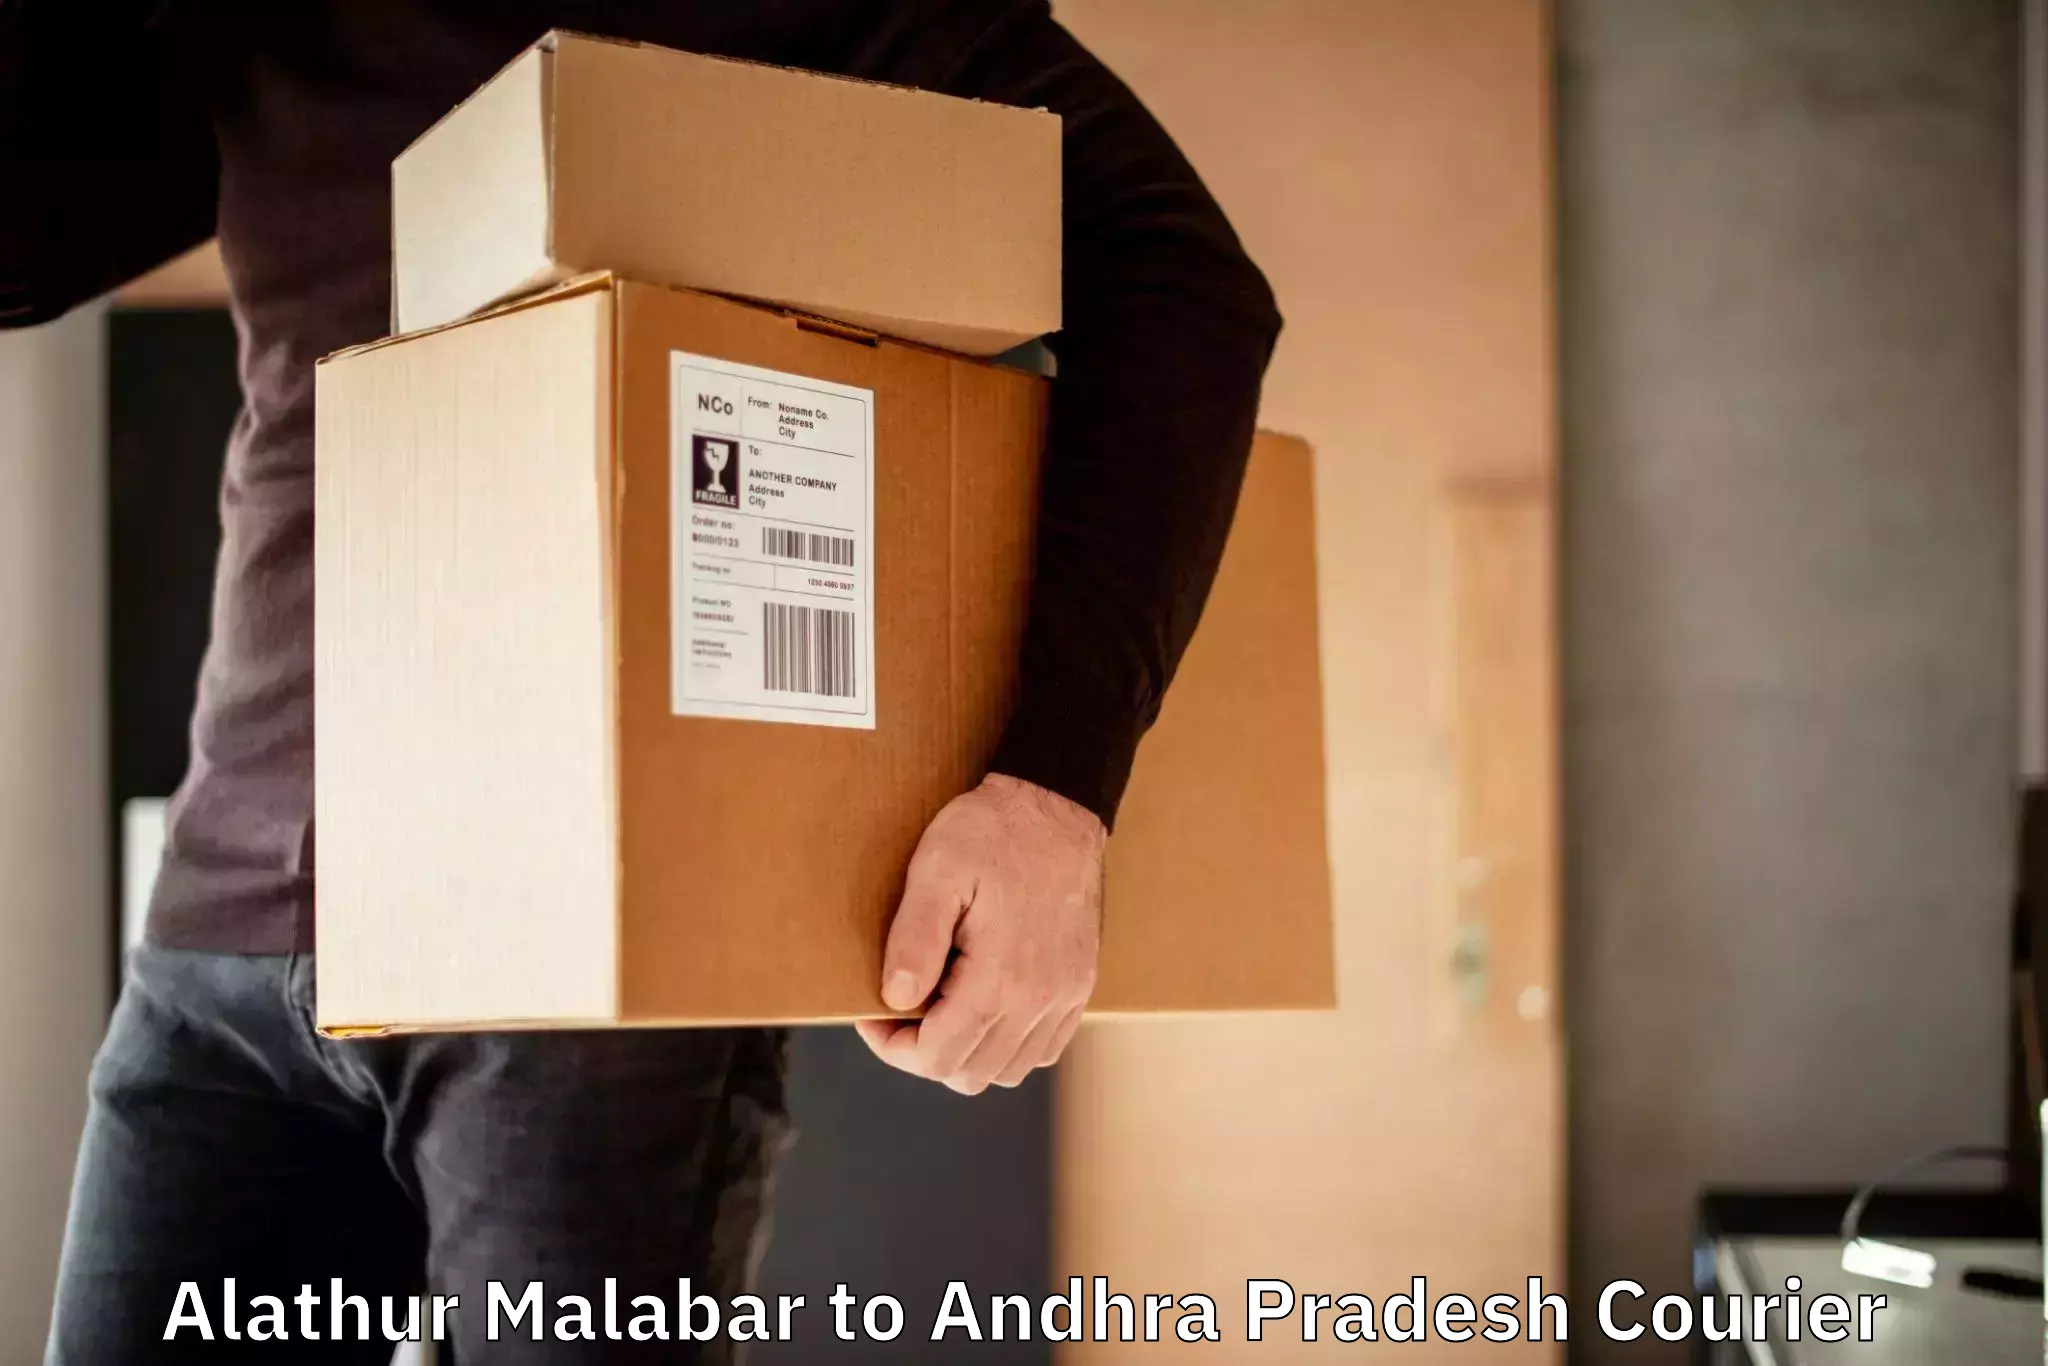 Customer-centric shipping Alathur Malabar to Uravakonda